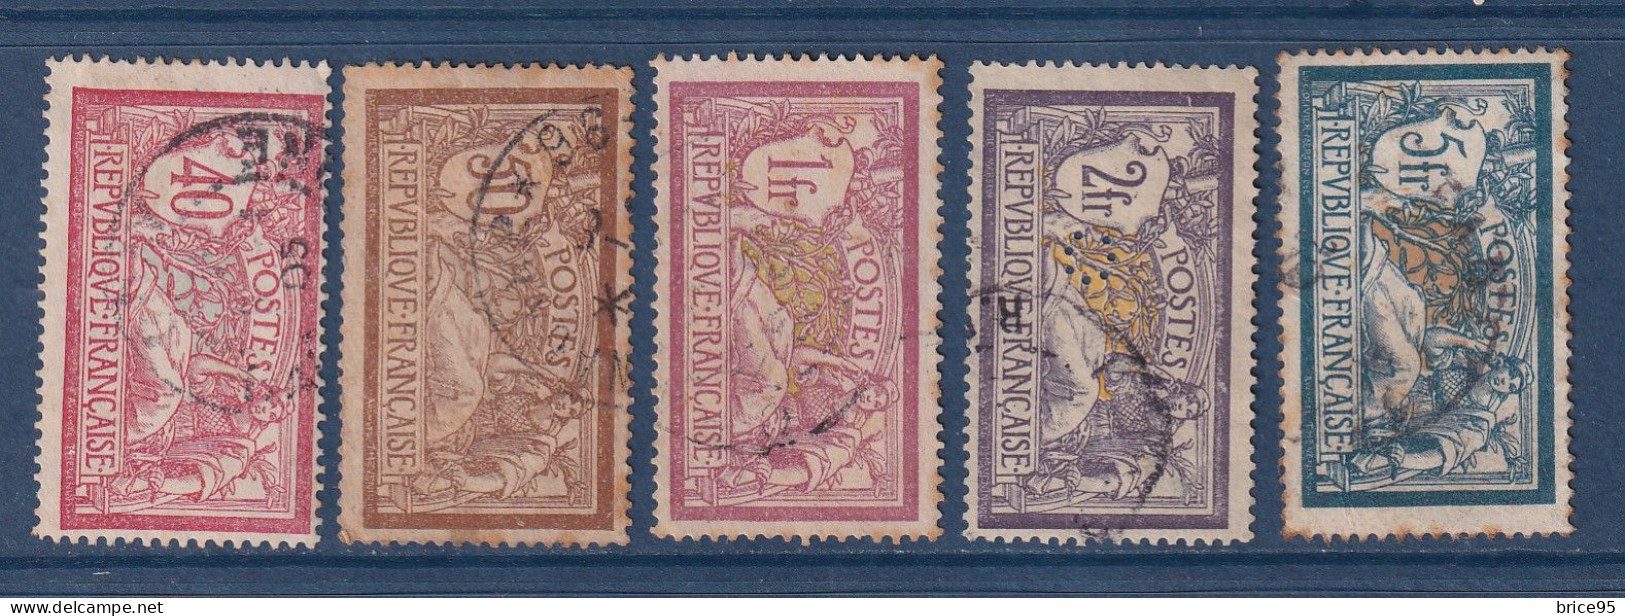 France - YT N° 119 à 123 - Oblitéré - 1900 - Usados